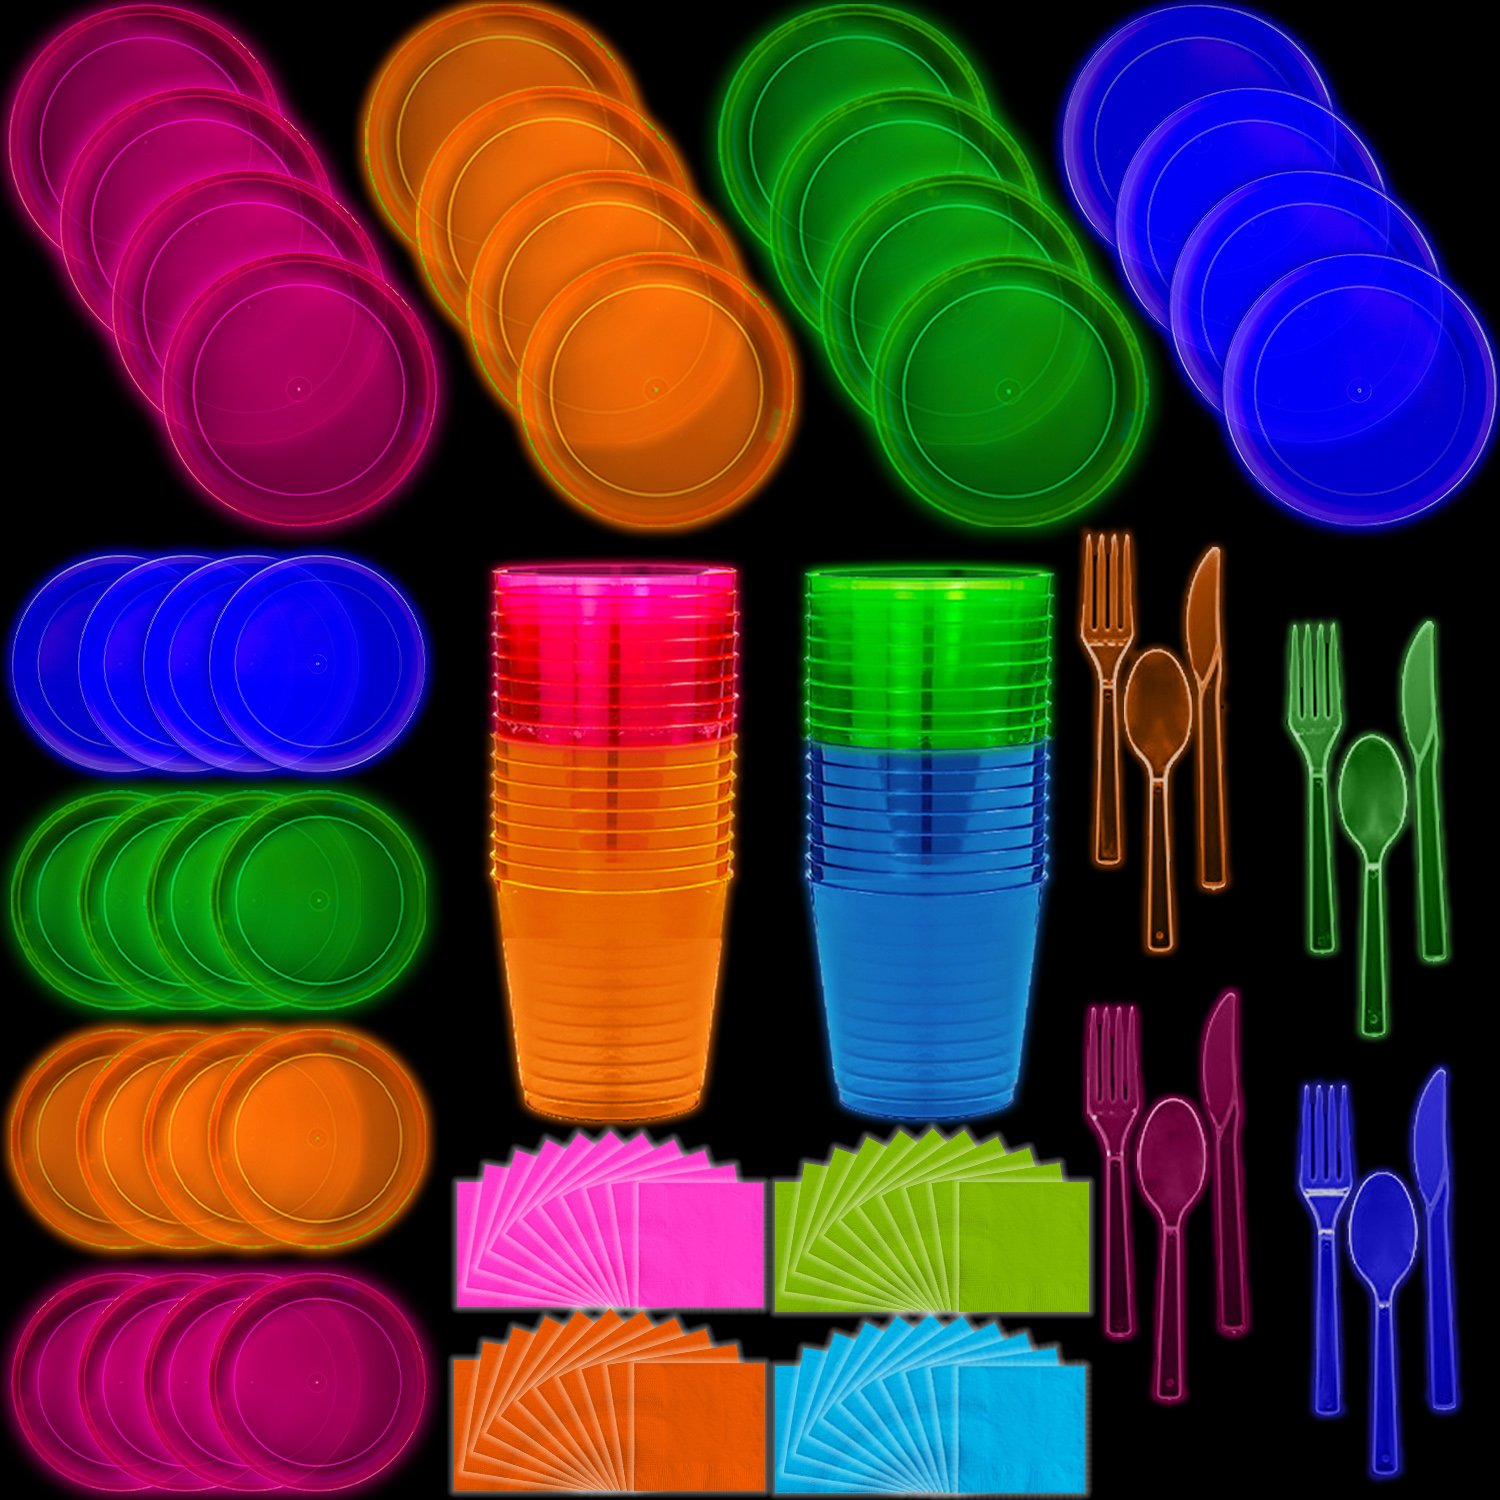 Plastic glow in the dark tableware set